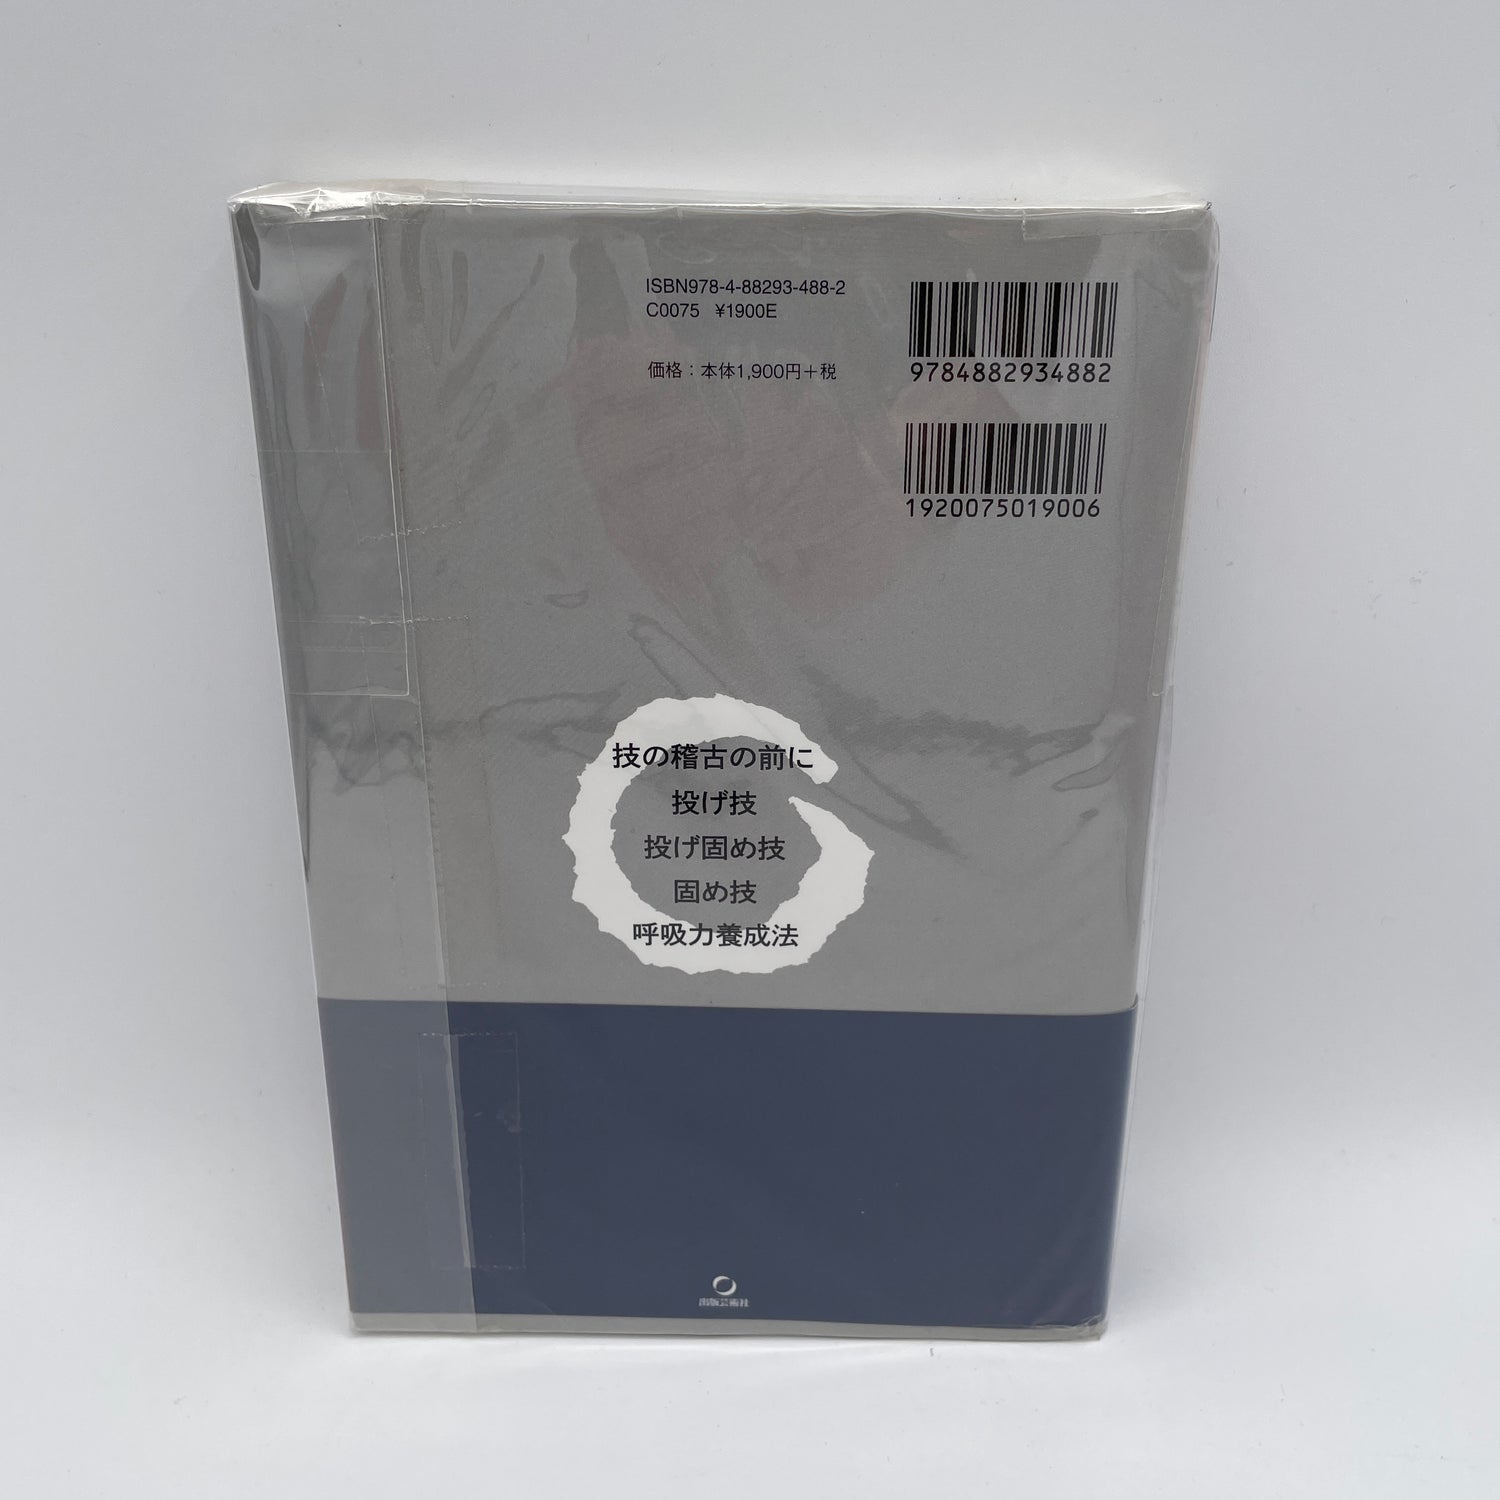 Libro y DVD de introducción a las técnicas de Aikido de Mitsuteru Ueshiba (usado)